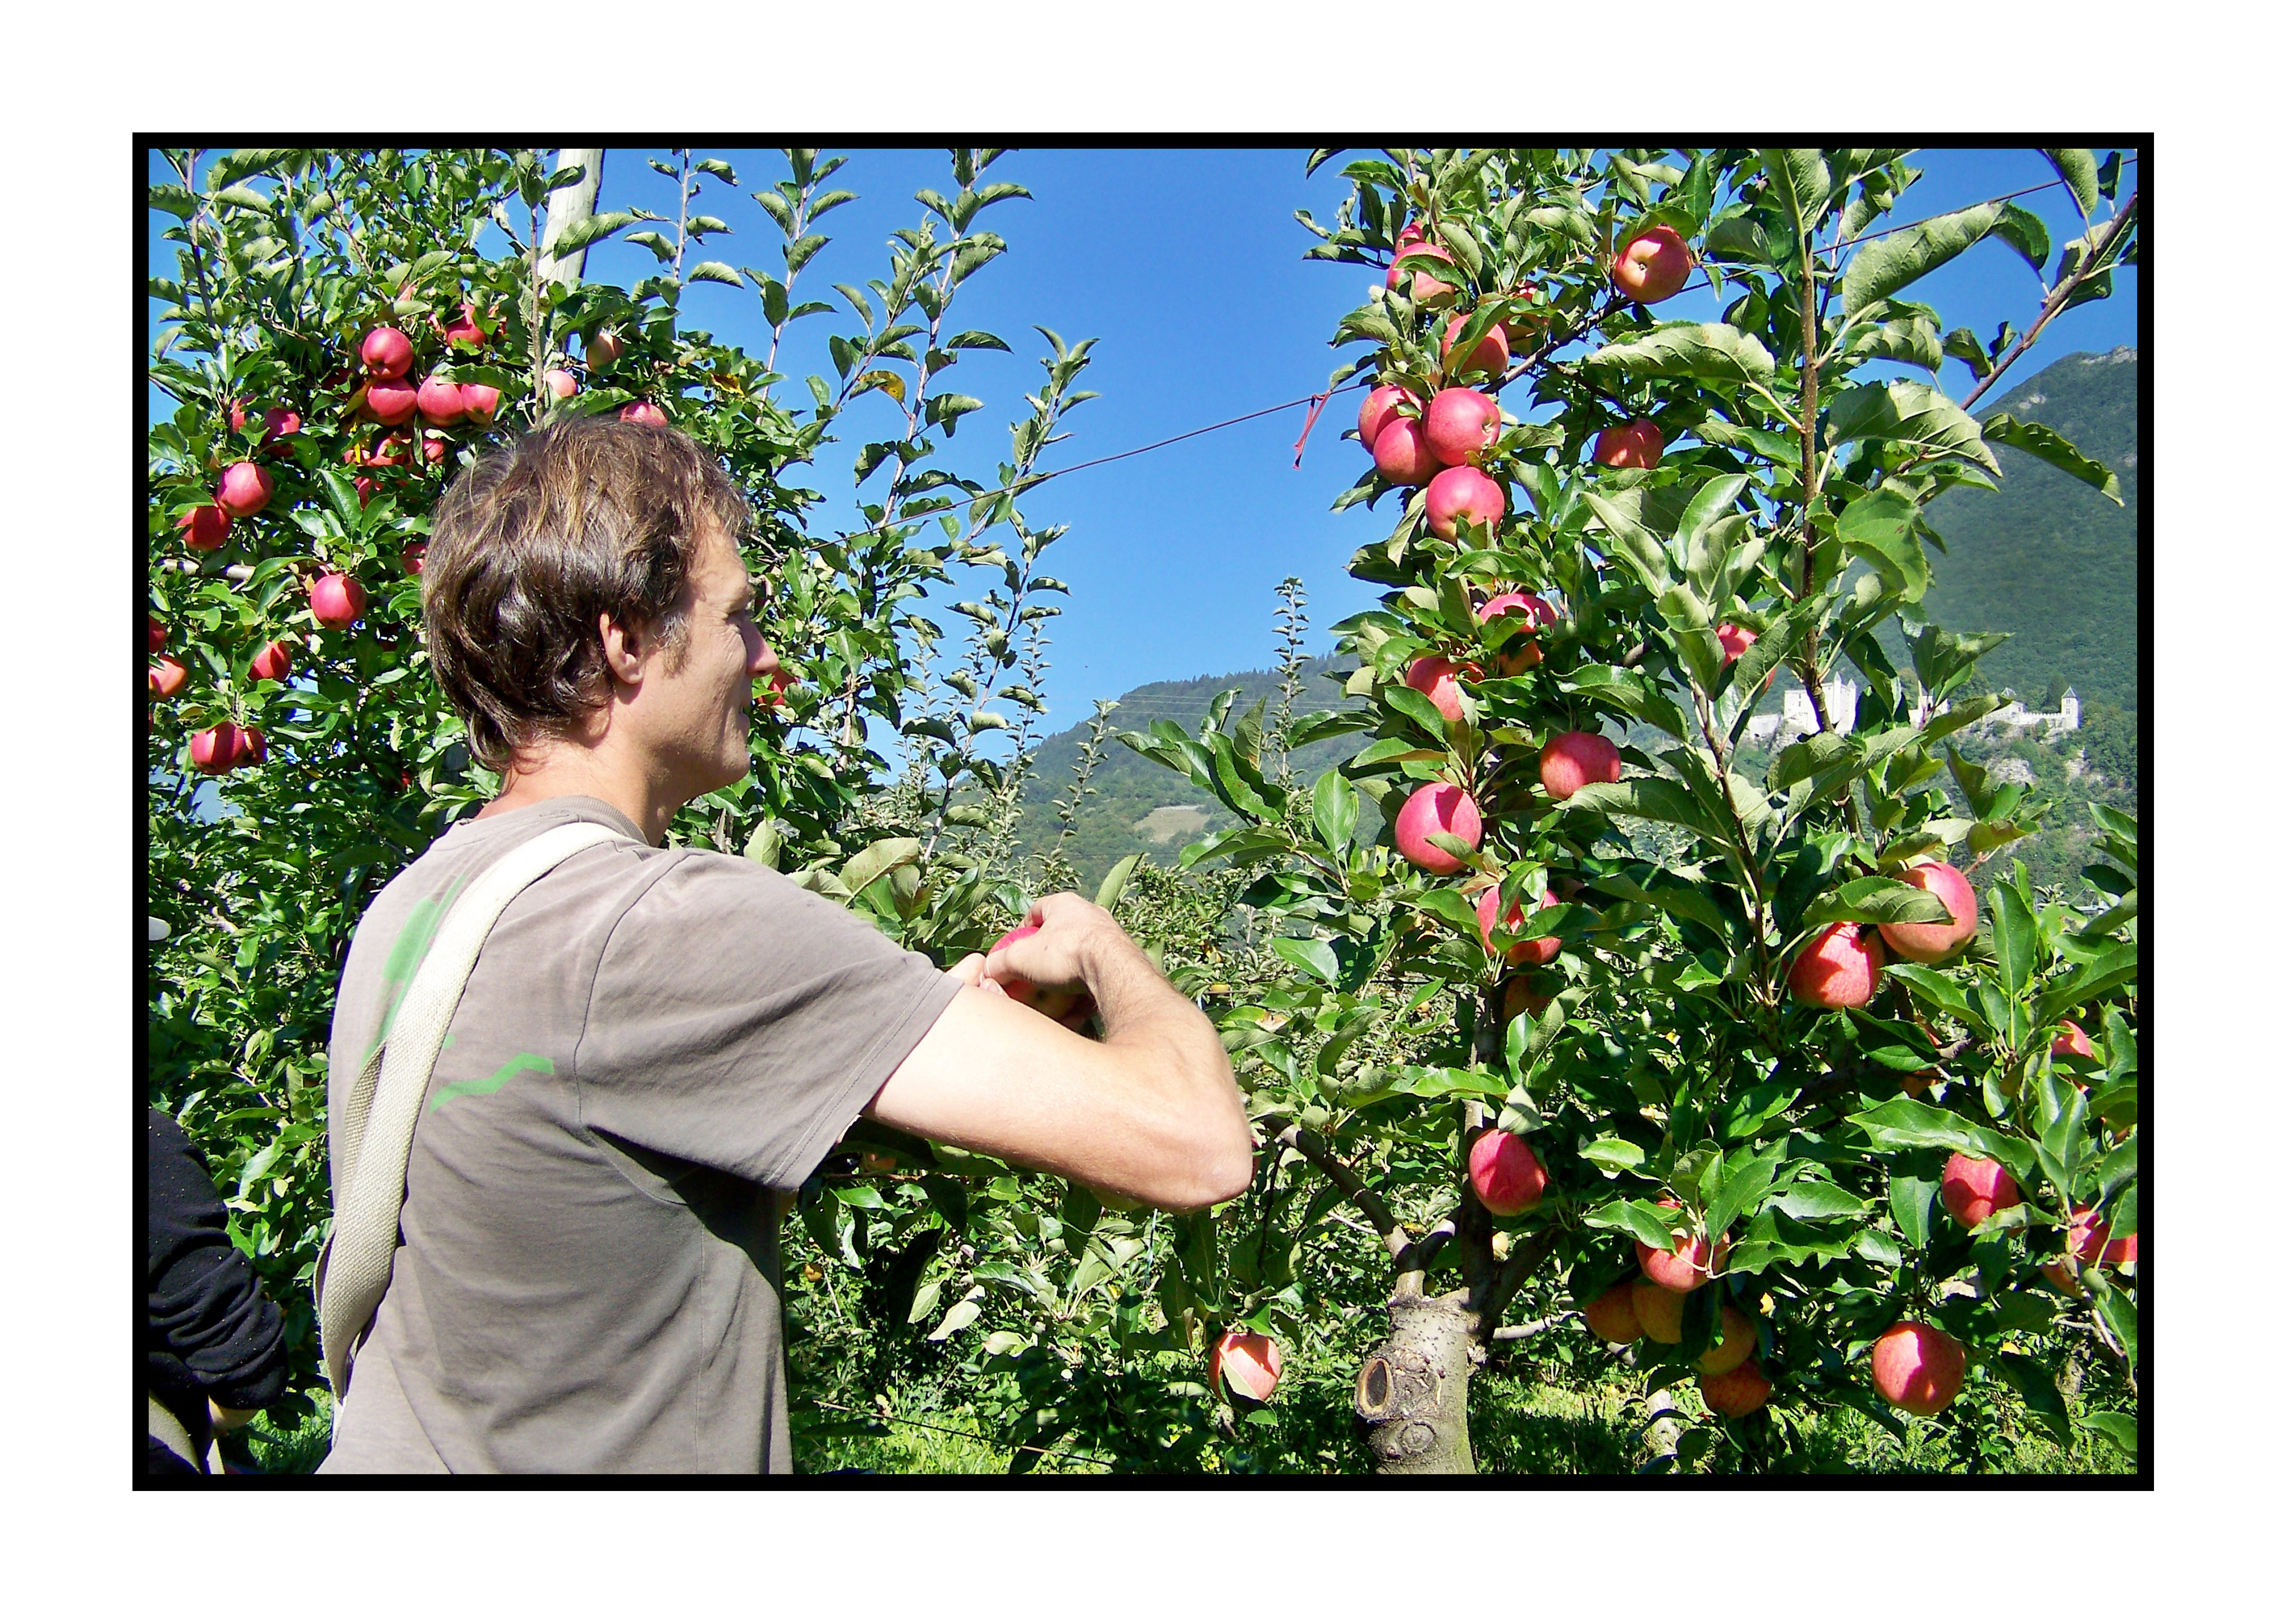 cueillette des pommes-Pommes bio- locales- arboriculteur- ferme-magasin de producteurs - Gilly sur Isère / Albertville- savoie - terroir